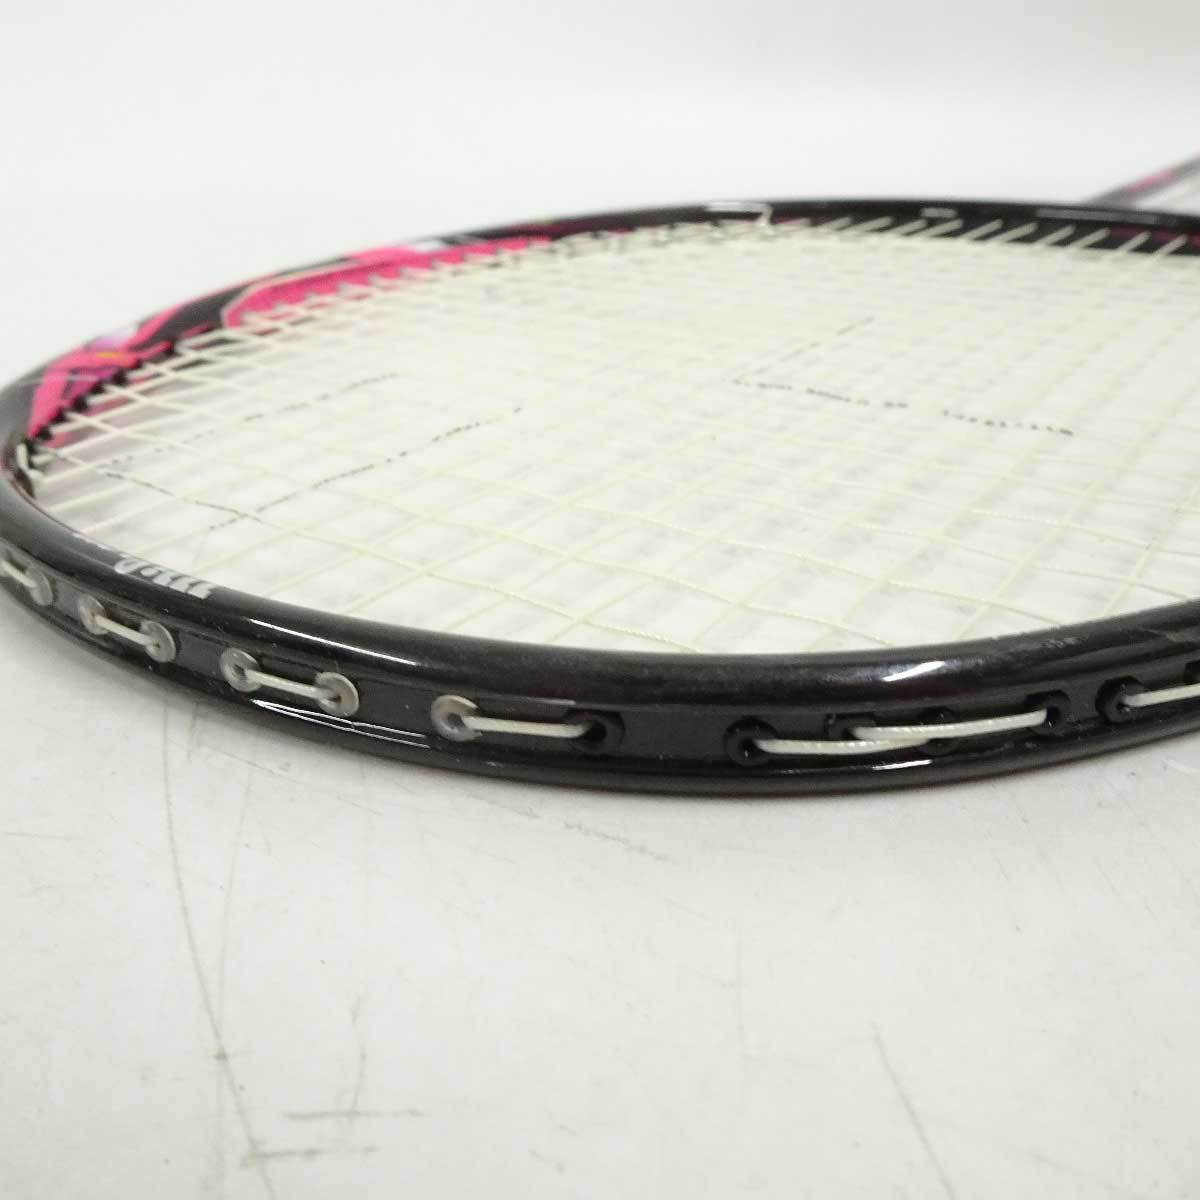 [ used ] Wilson BLAZE SX 9600 badminton racket Blaze 7UG5 Wilson